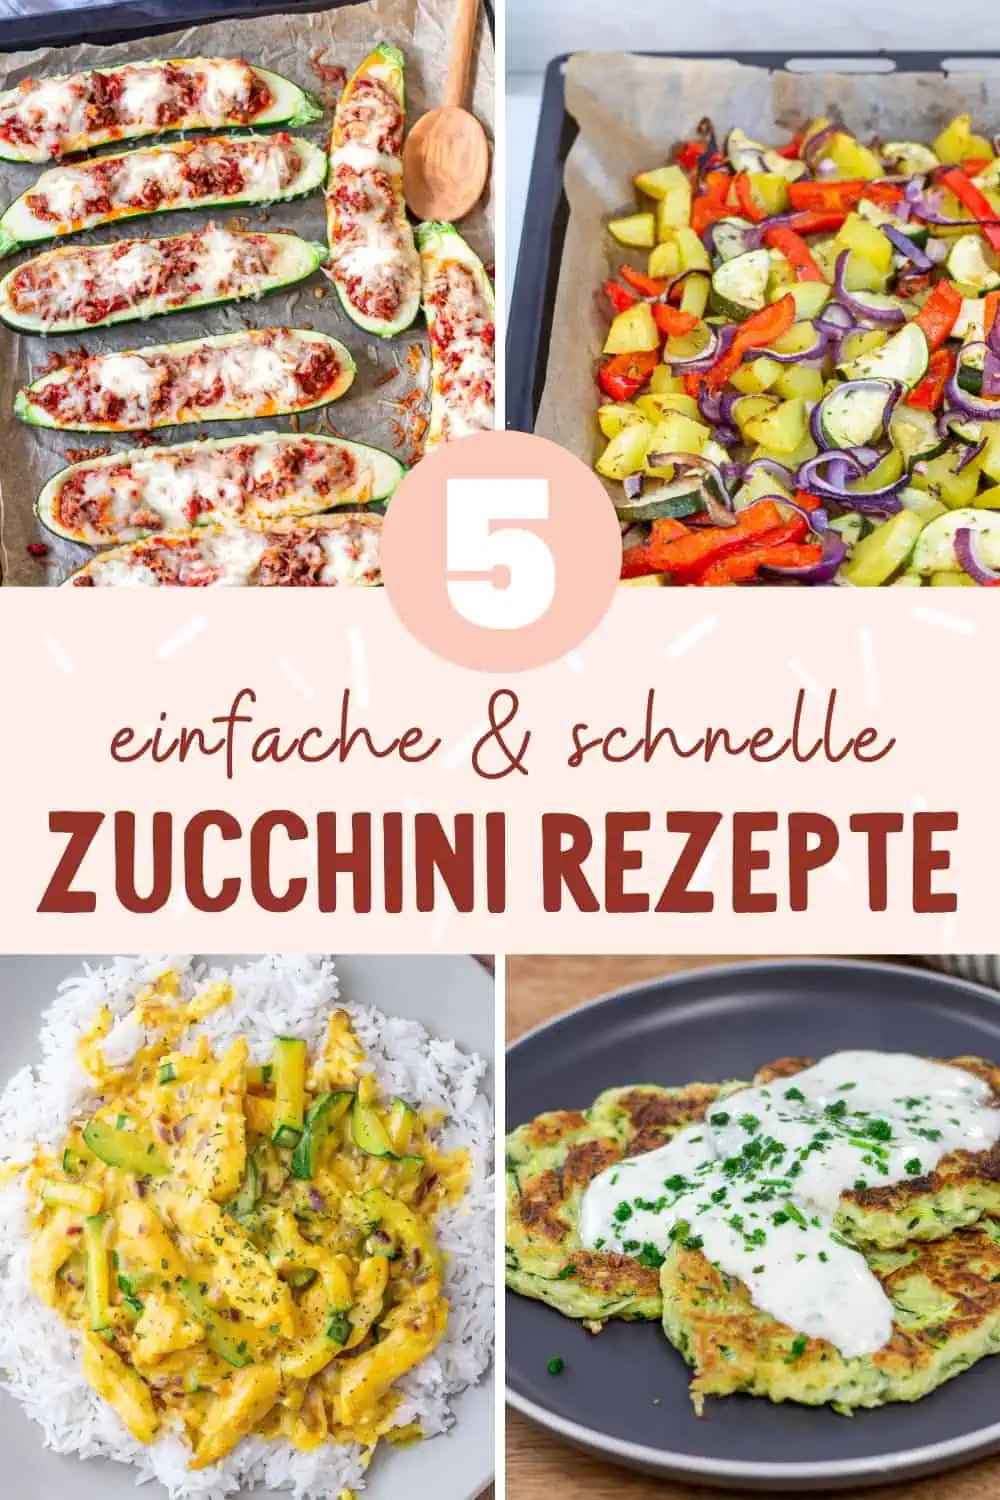 Zucchini Rezepte - 5 einfache und schnelle Ideen mit Zucchin